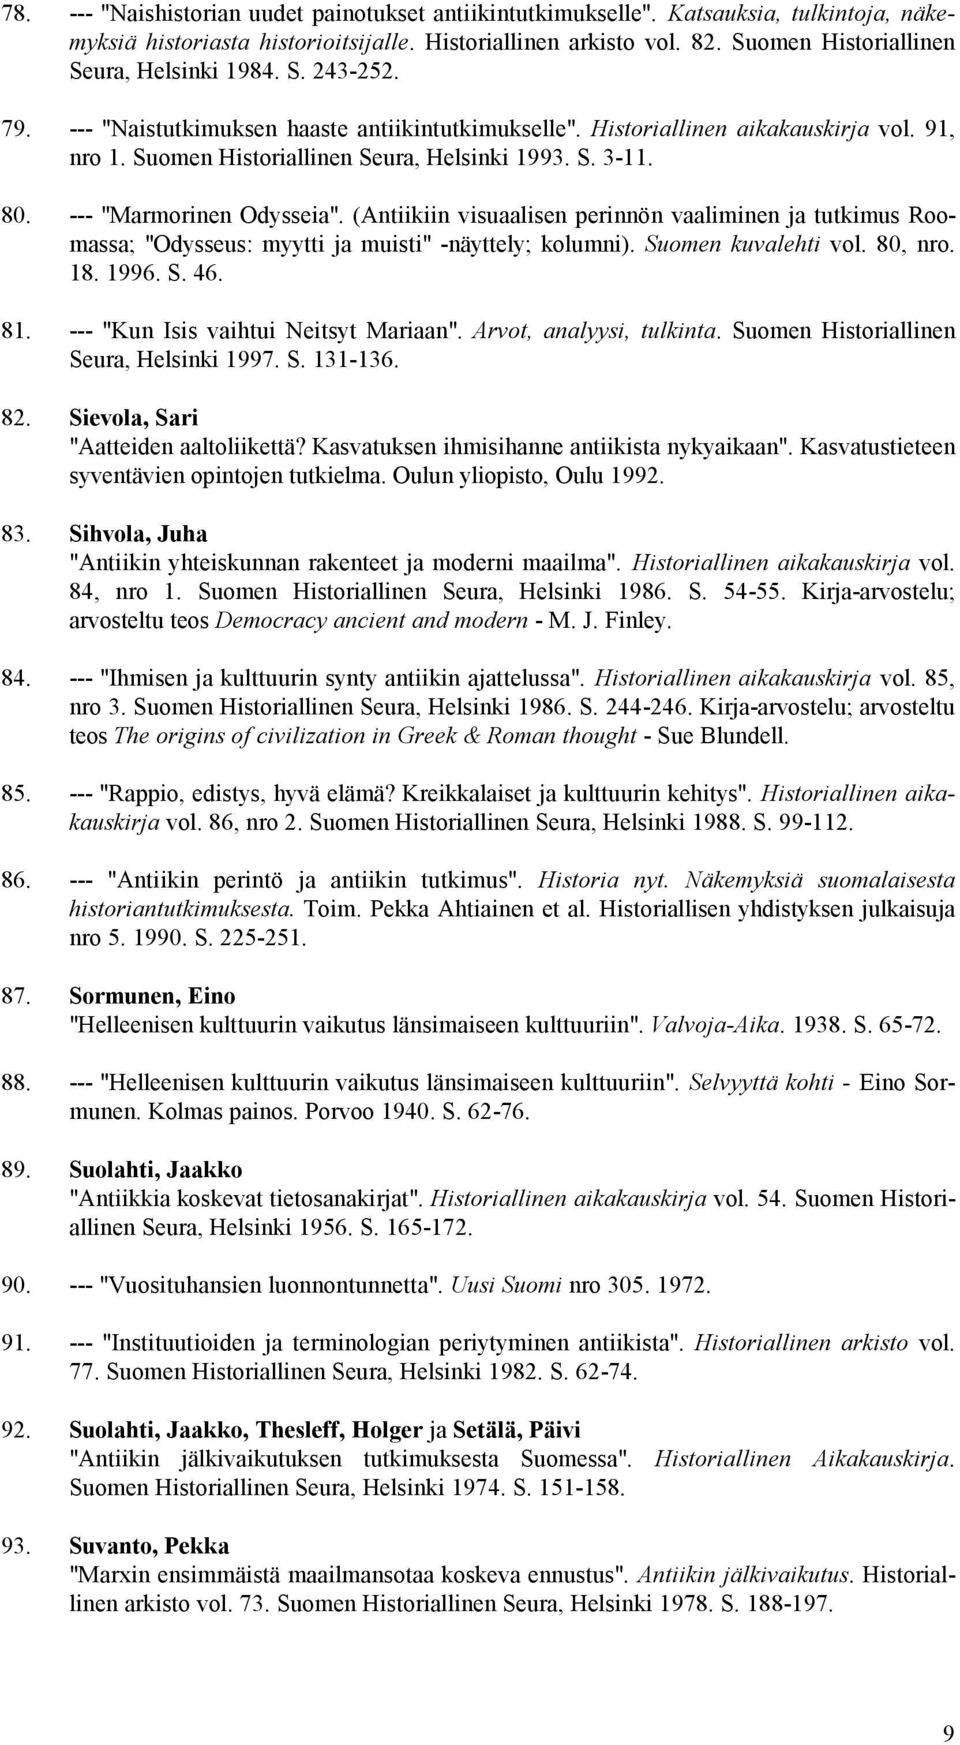 S. 3-11. 80. --- "Marmorinen Odysseia". (Antiikiin visuaalisen perinnön vaaliminen ja tutkimus Roomassa; "Odysseus: myytti ja muisti" -näyttely; kolumni). Suomen kuvalehti vol. 80, nro. 18. 1996. S. 46.